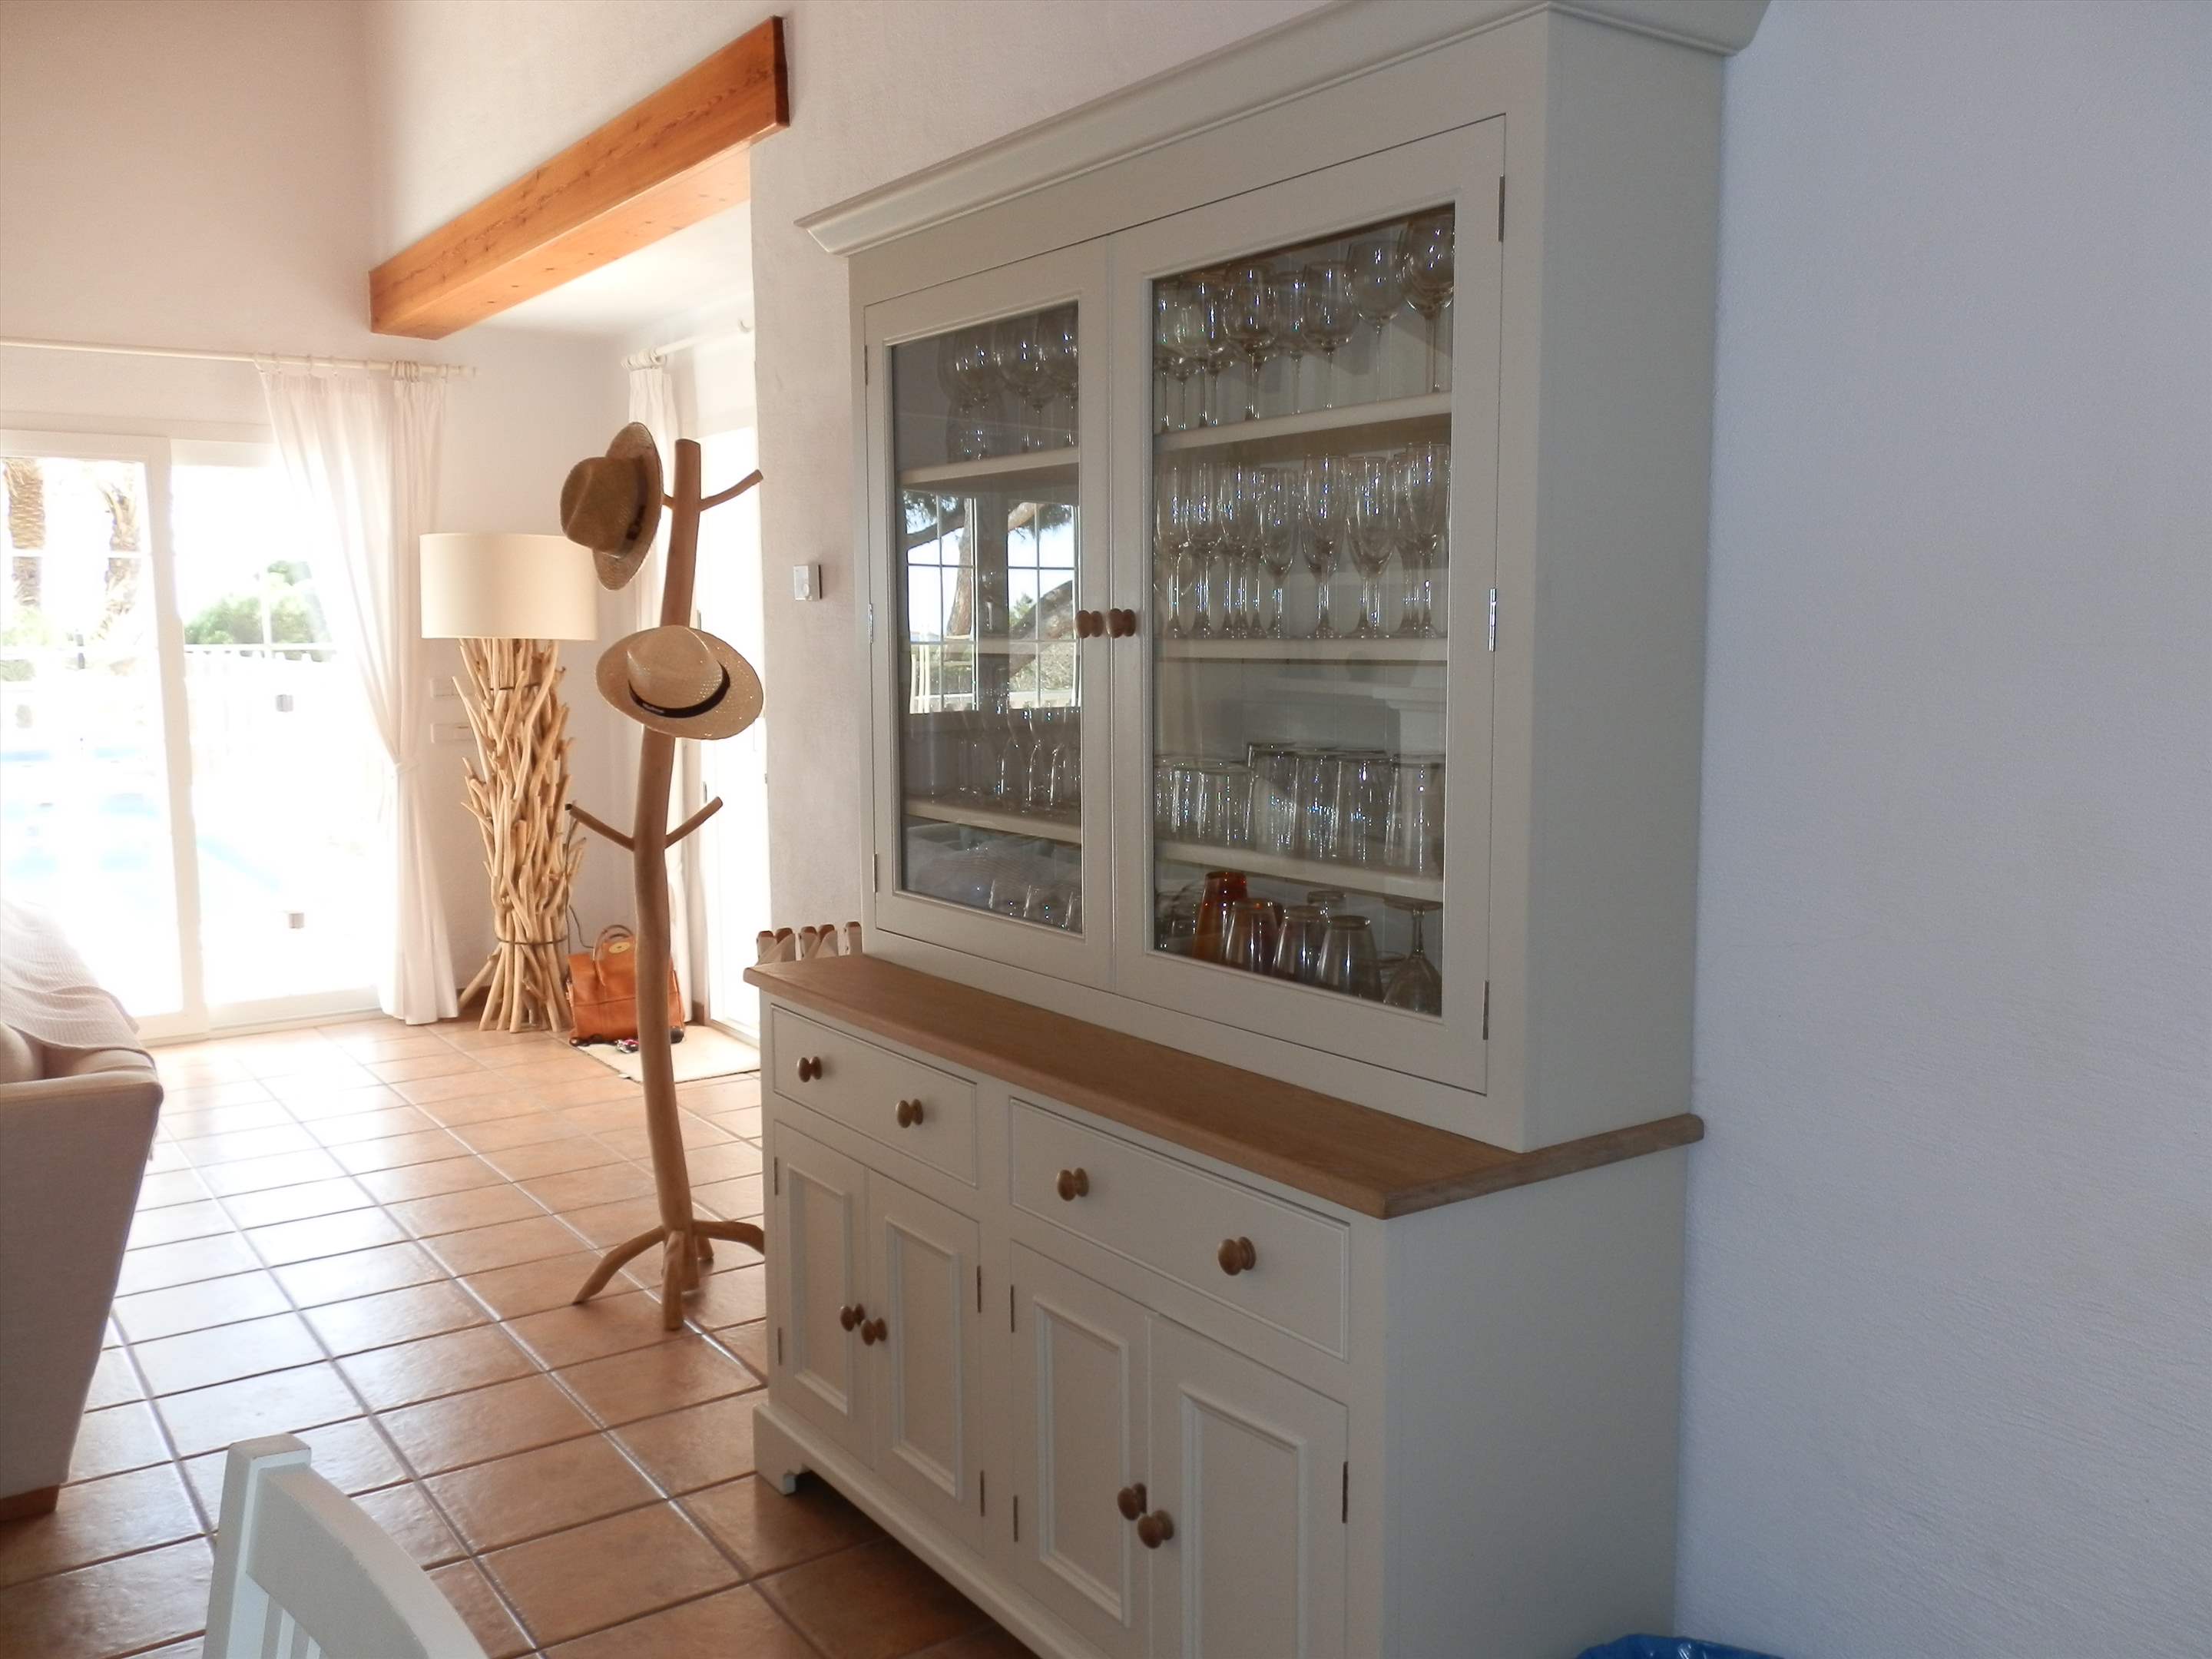 Casa del Mar de Ana-Cristo, 5 Bedroom rate, 5 bedroom villa in Mahon, San Luis & South East, Menorca Photo #26